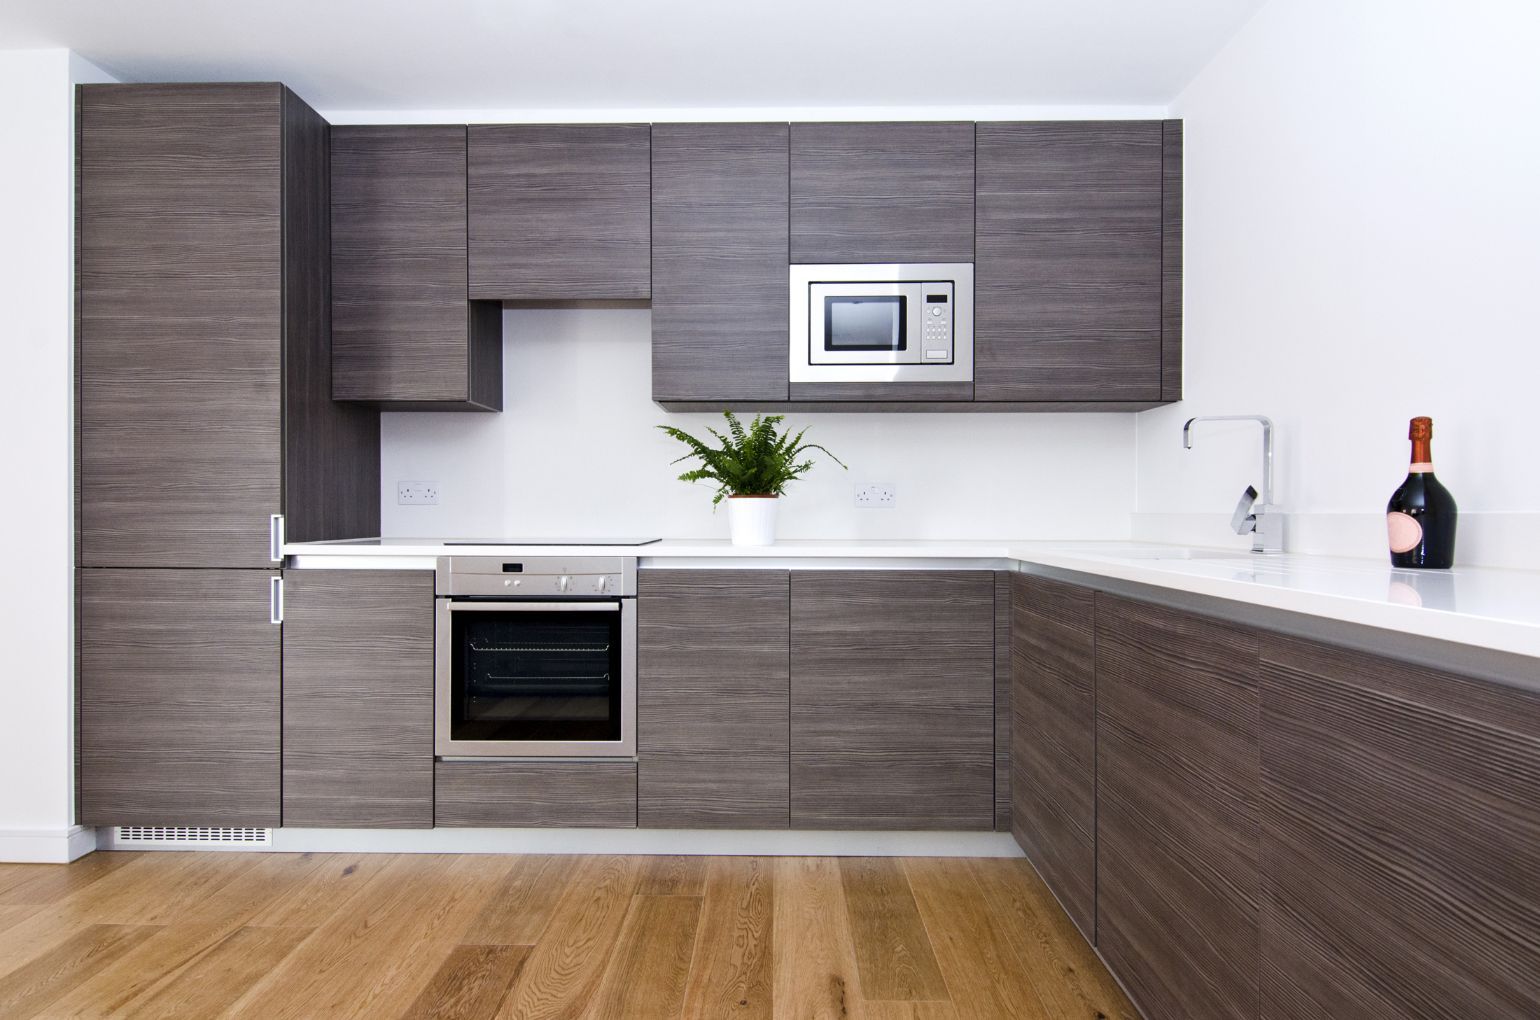 custom kitchen design - wooden cabinets